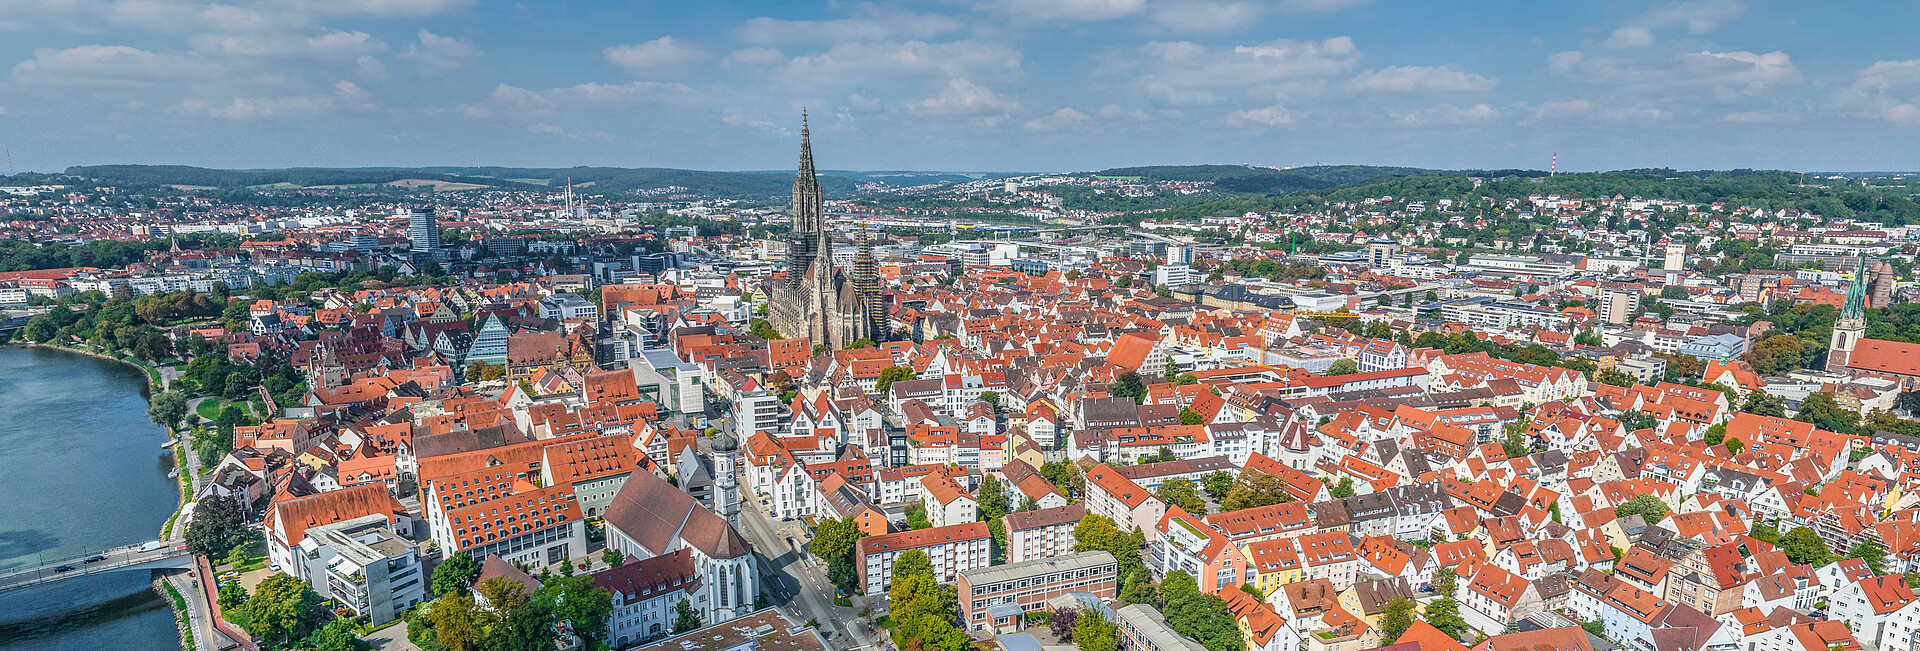 Ulm - Blick zum Wahrzeichen der Stadt, dem Ulmer Münster